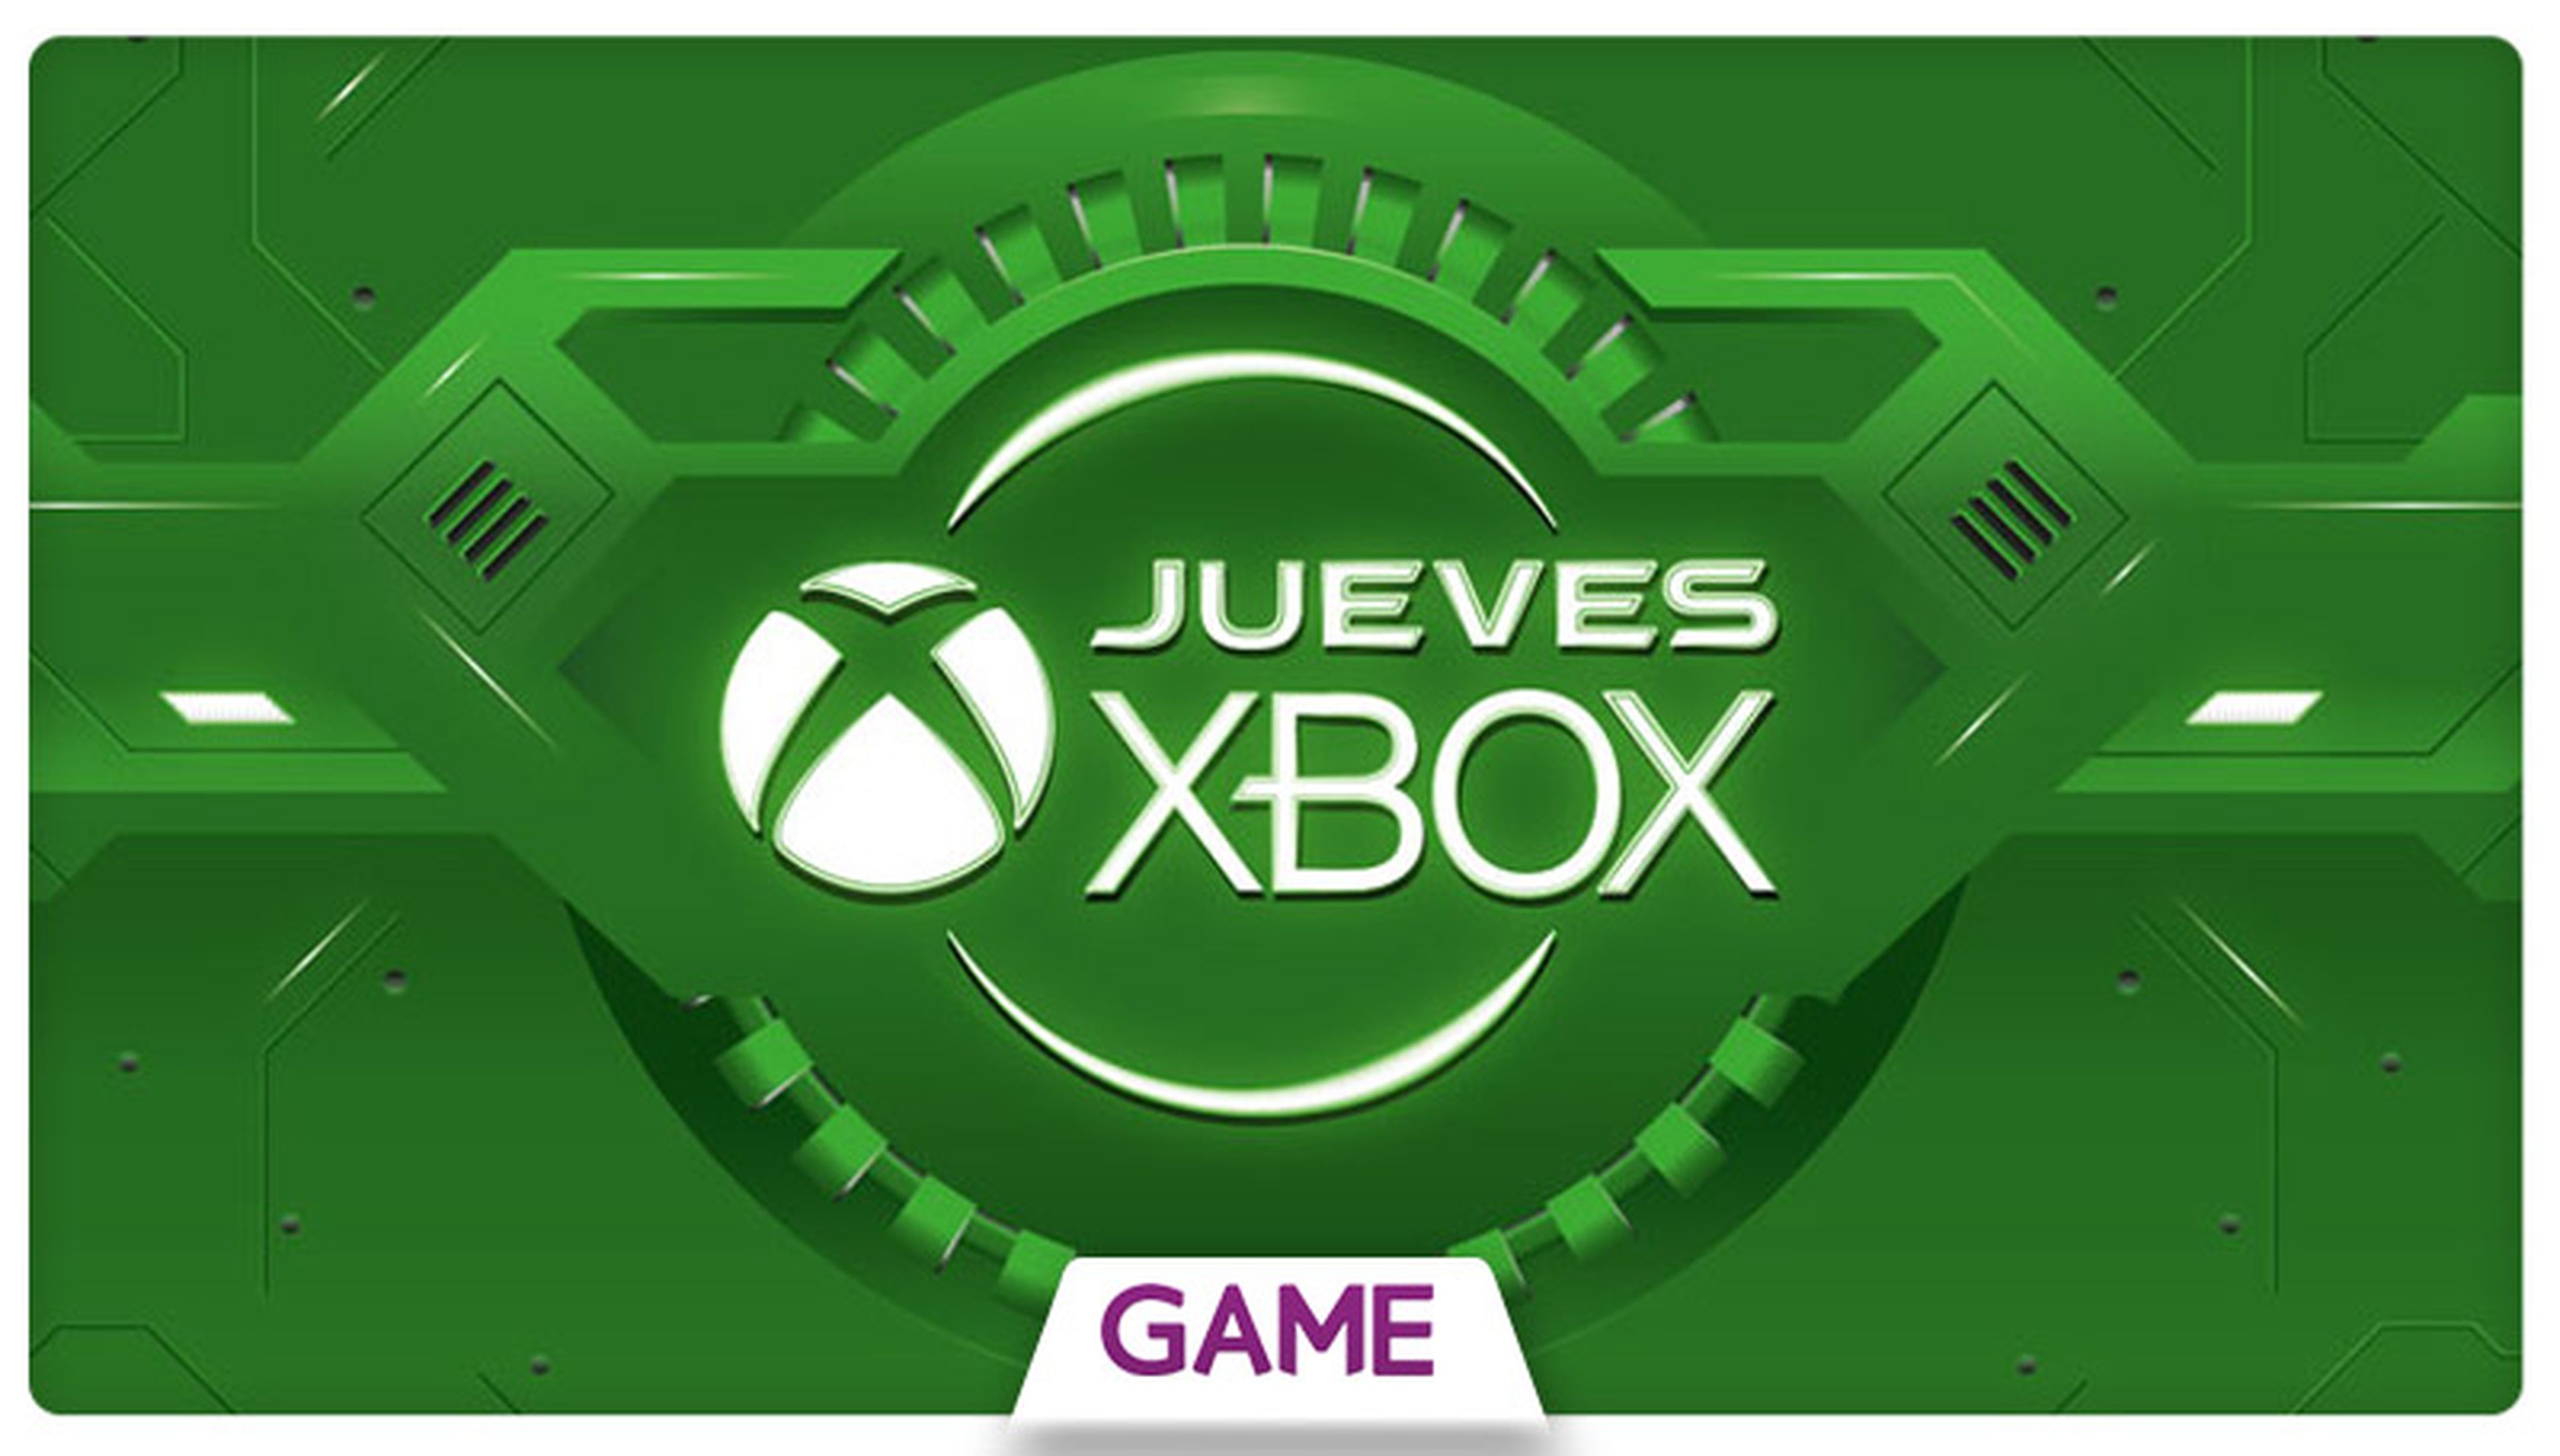 Jueves Xbox en GAME: Ofertas del 25/02/2016